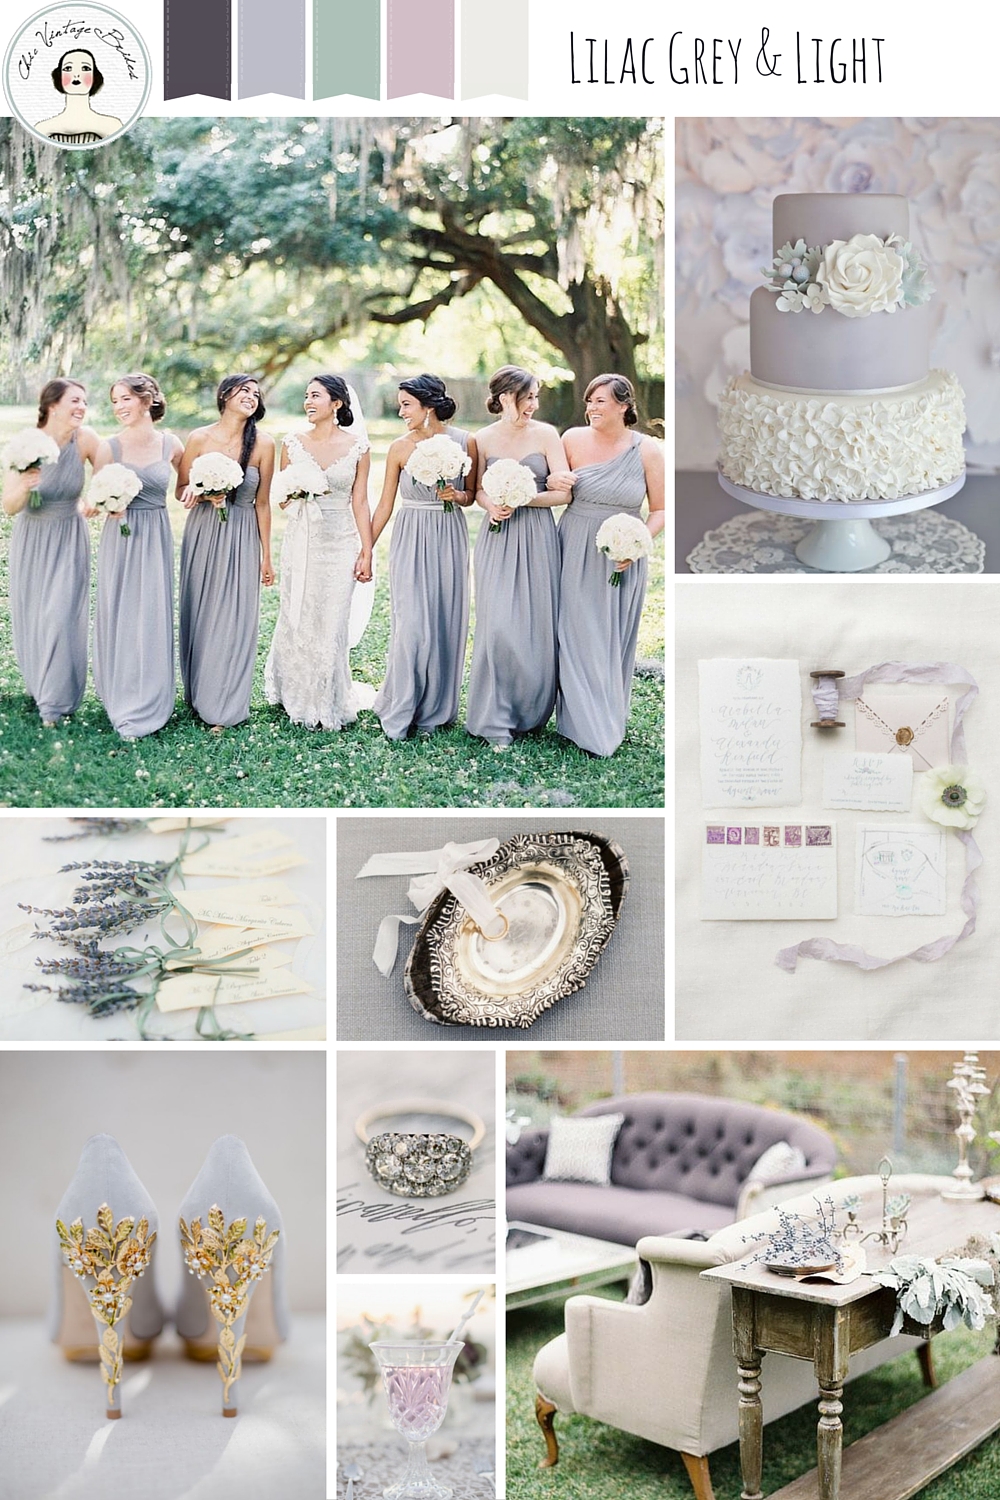 Lilac Grey & Light - Elegant Wedding Ideas in a Chic Grey & Pastel Palette